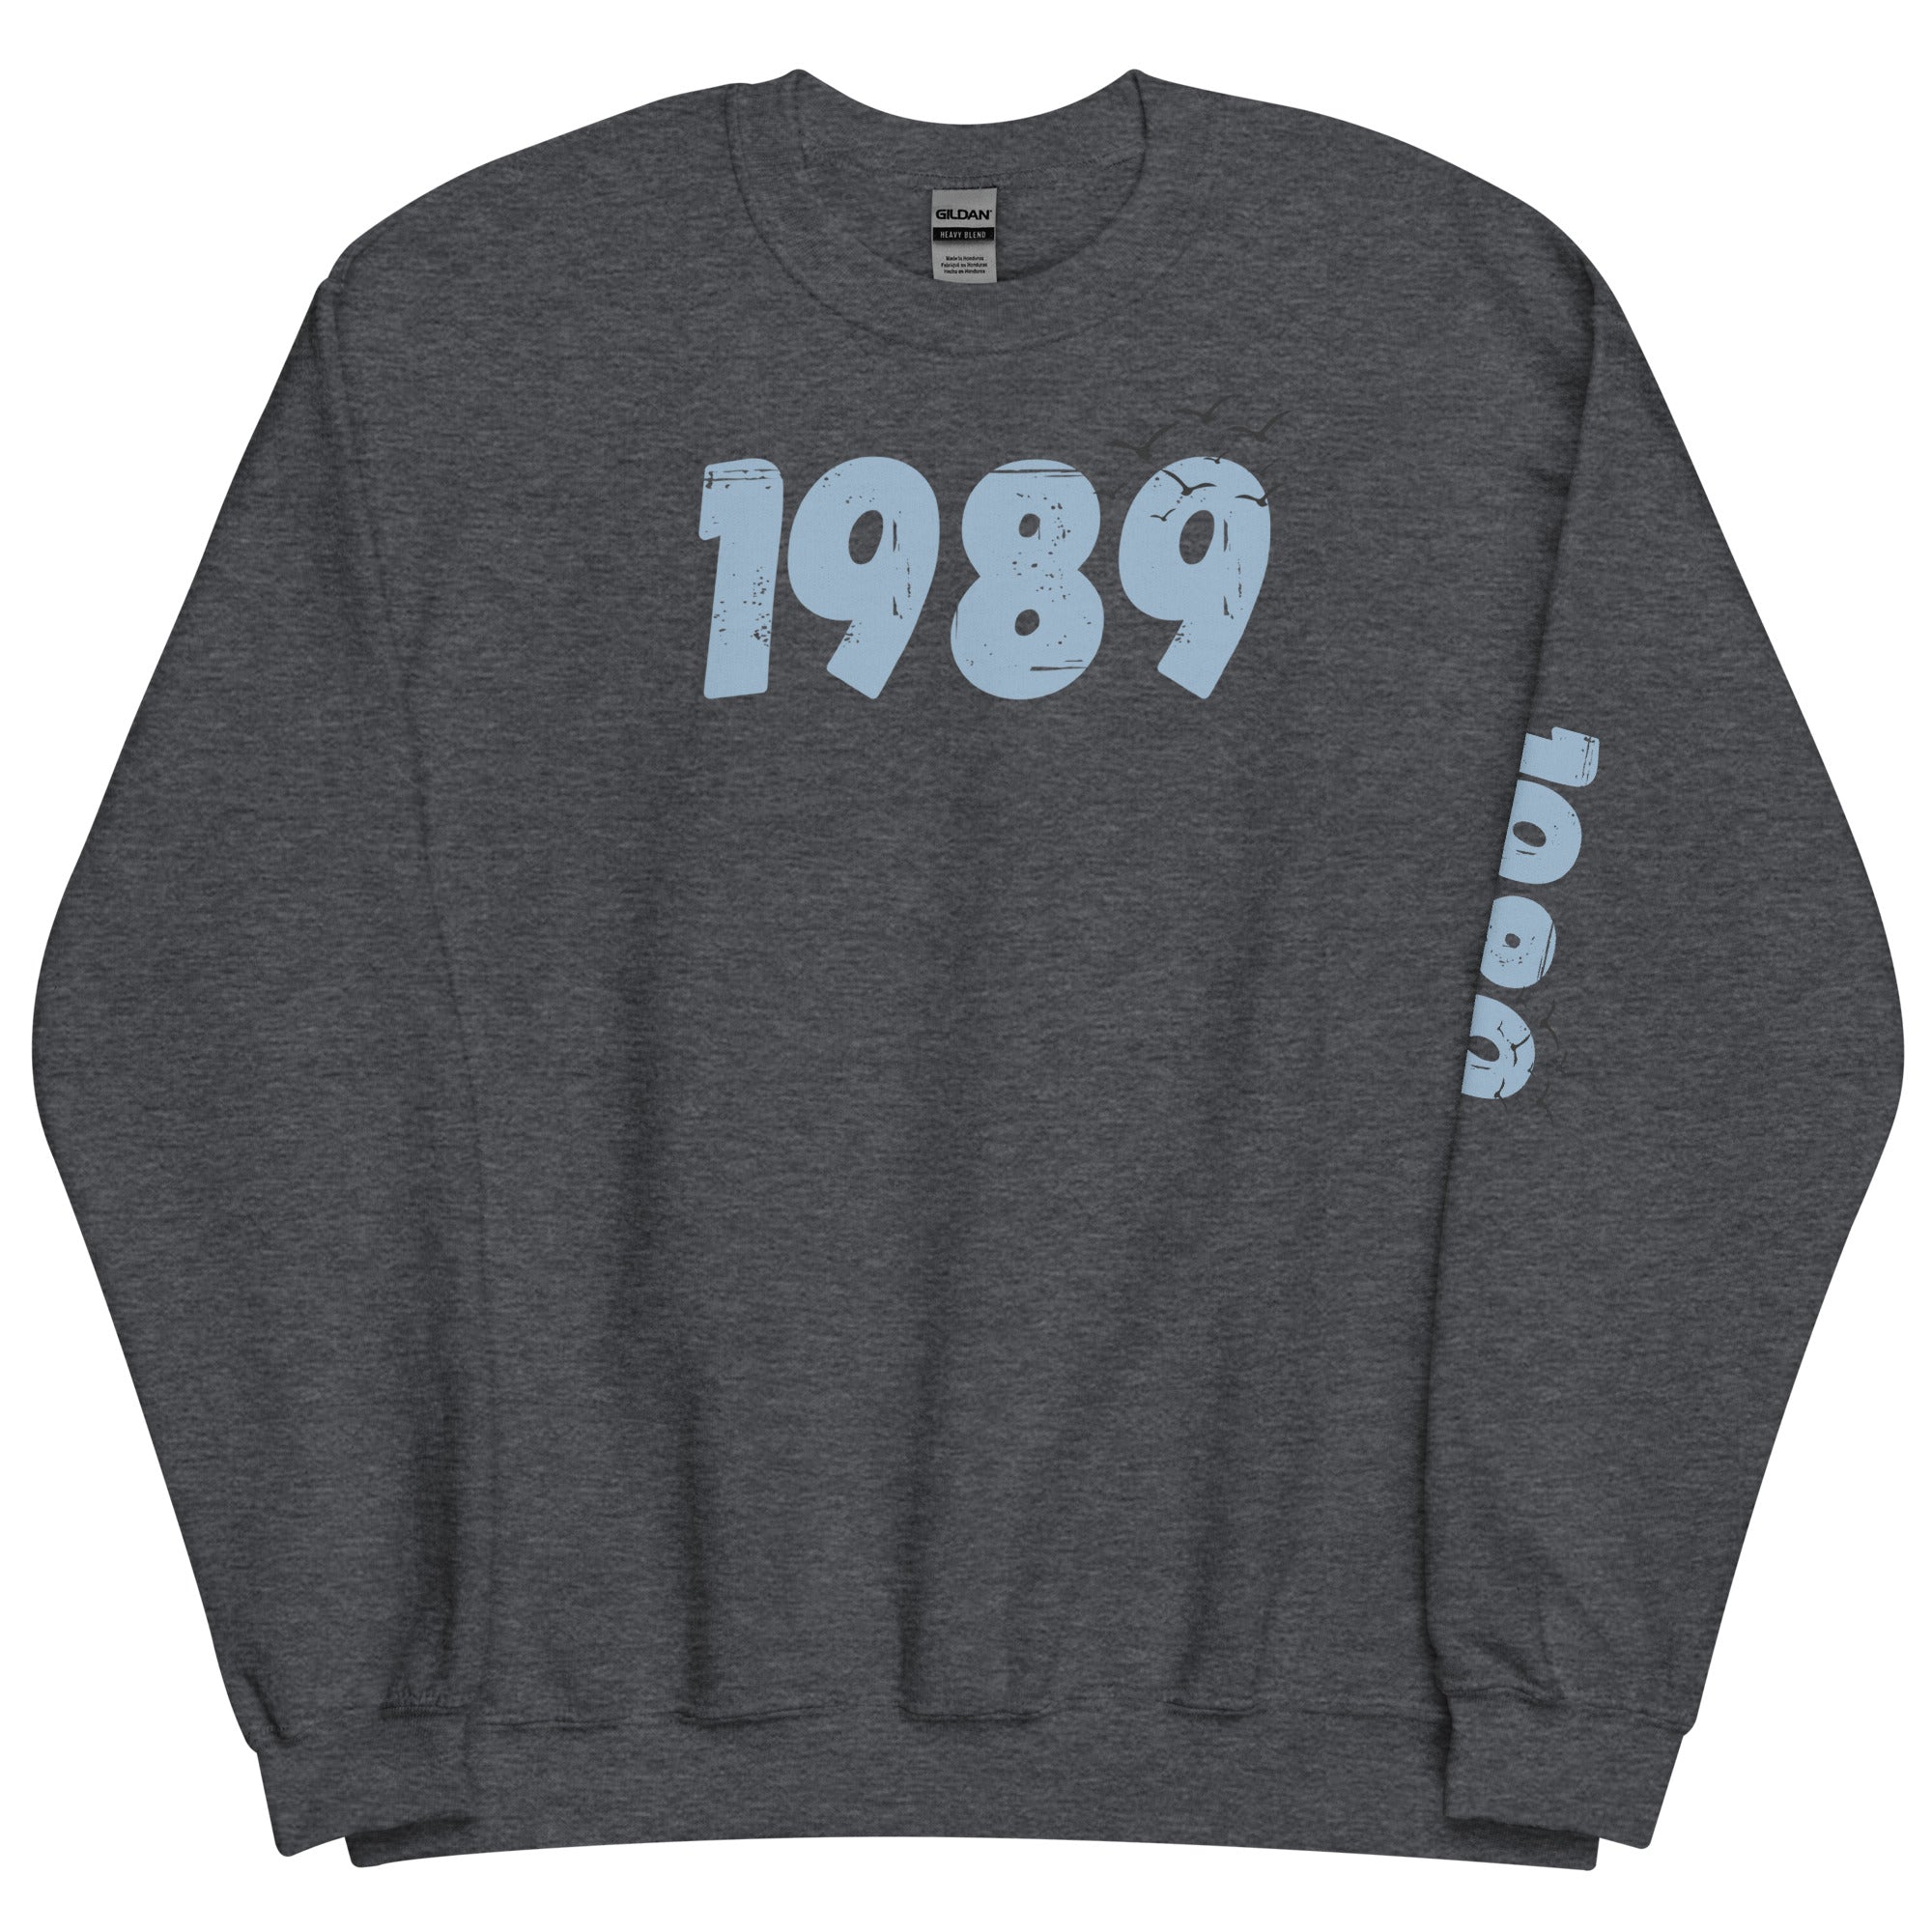 1989 Sweatshirt with birds, Unisex 1989 Crewneck Sweatshirt, TS 